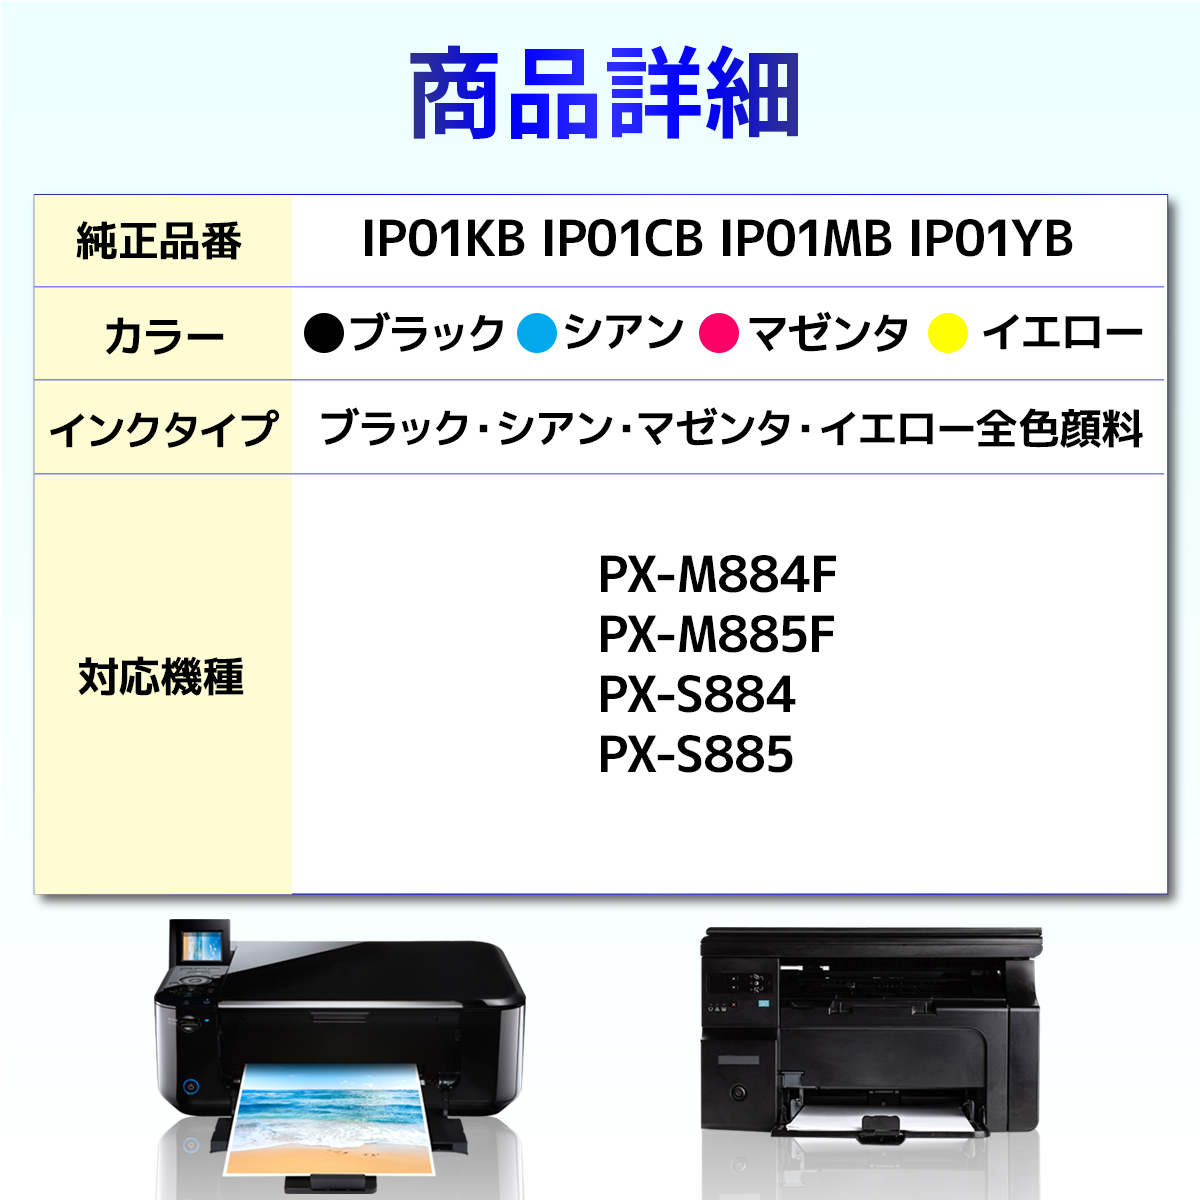 IP01　IP01KB　IP01CB　互換インクパック　エプソン　PX-S885　IP01YB　PX-M884F　PX-S884　PX-M885F　EPSON　IP01MB　5個セット